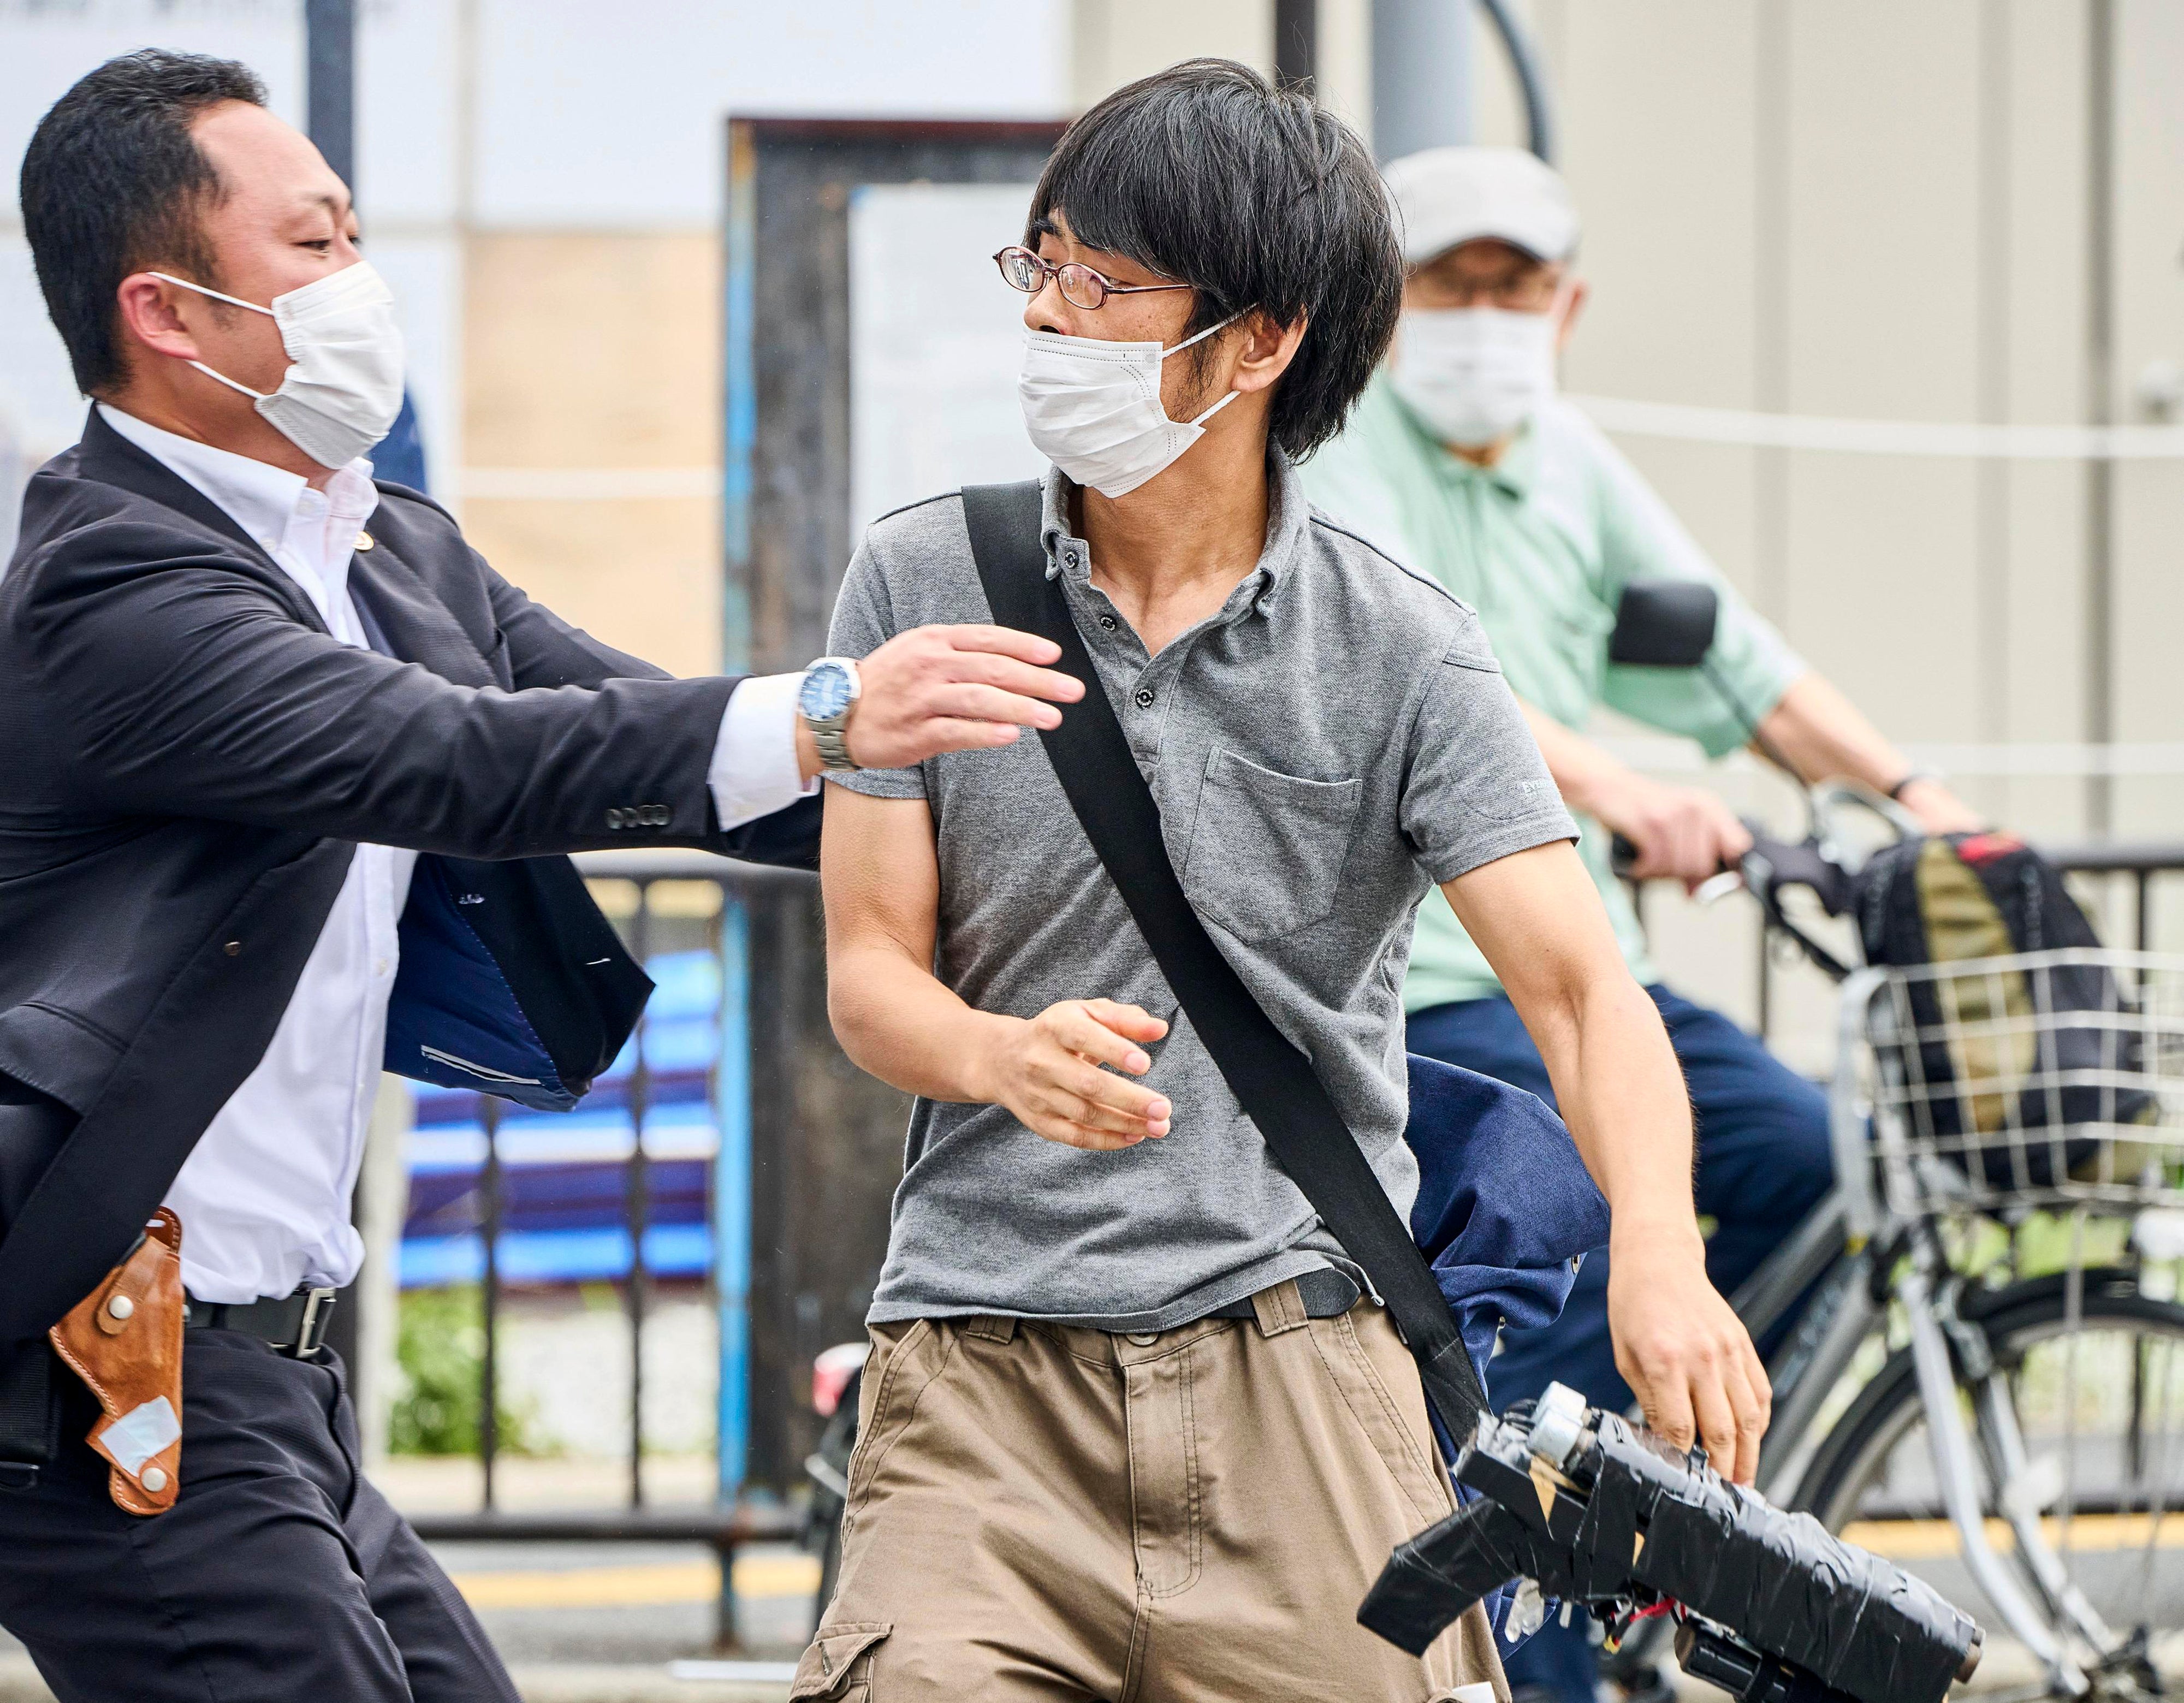 Tetsuya Yamagami (der), sospechoso de asesinar a Shinzo Abe sostiene lo que parece un arma “casera” mientras es detenido en la escena del crimen